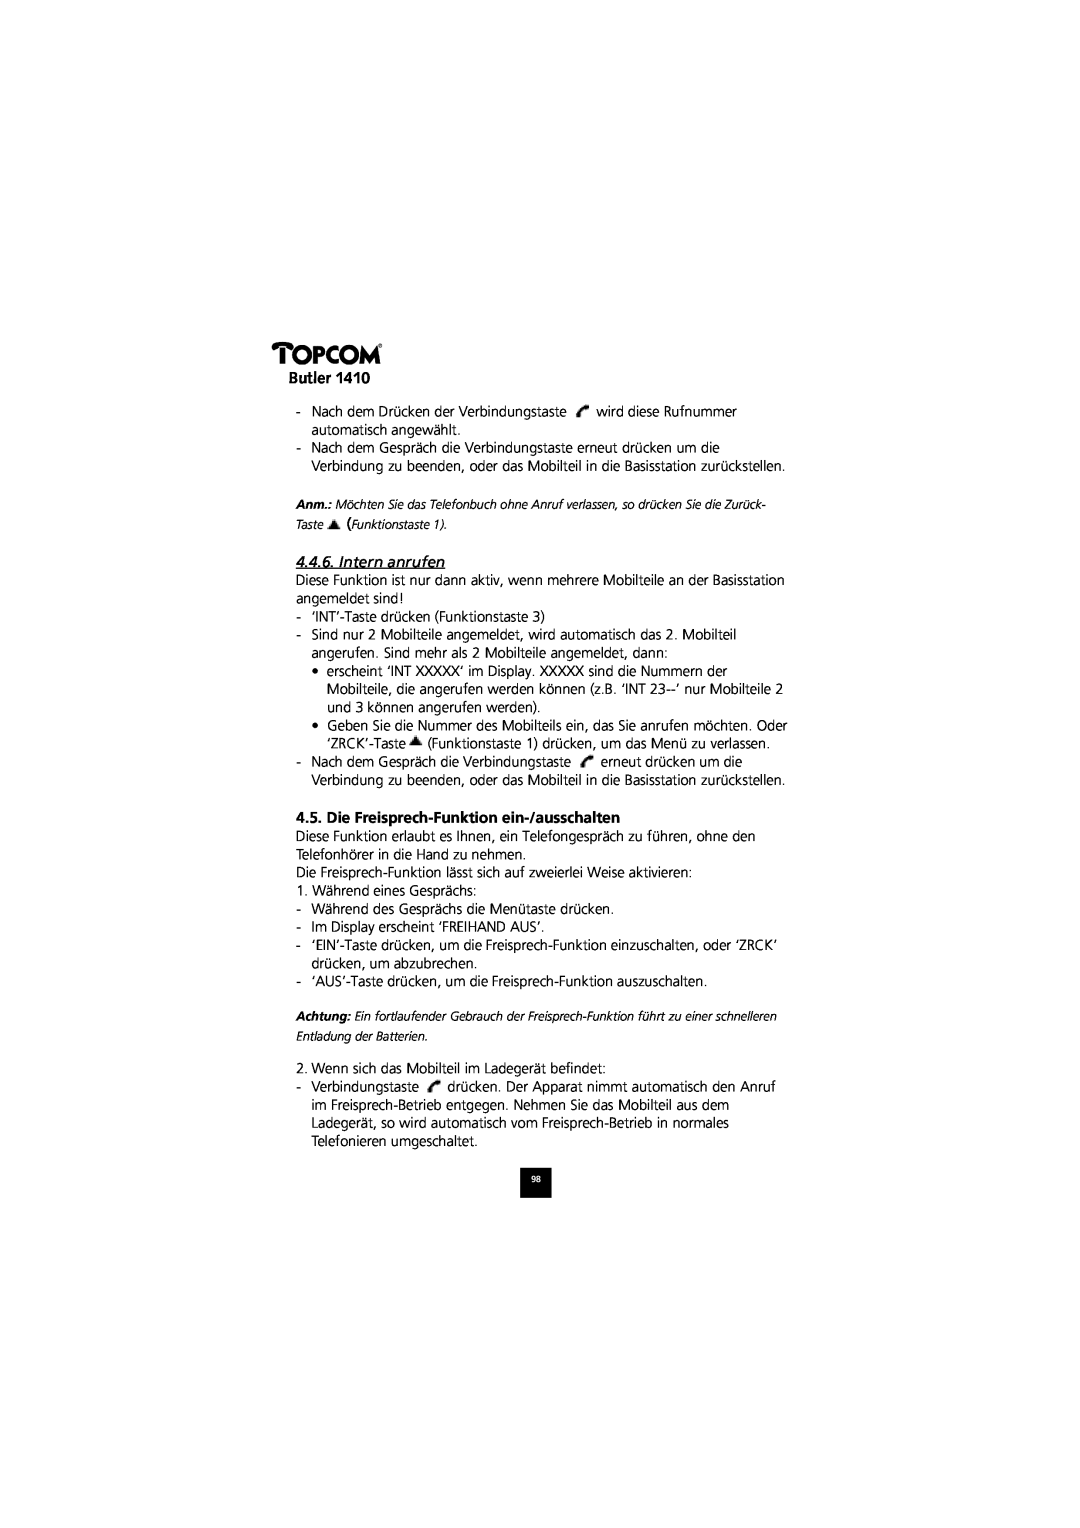 Topcom 1410 manual Intern anrufen, Die Freisprech-Funktion ein-/ausschalten, Butler 